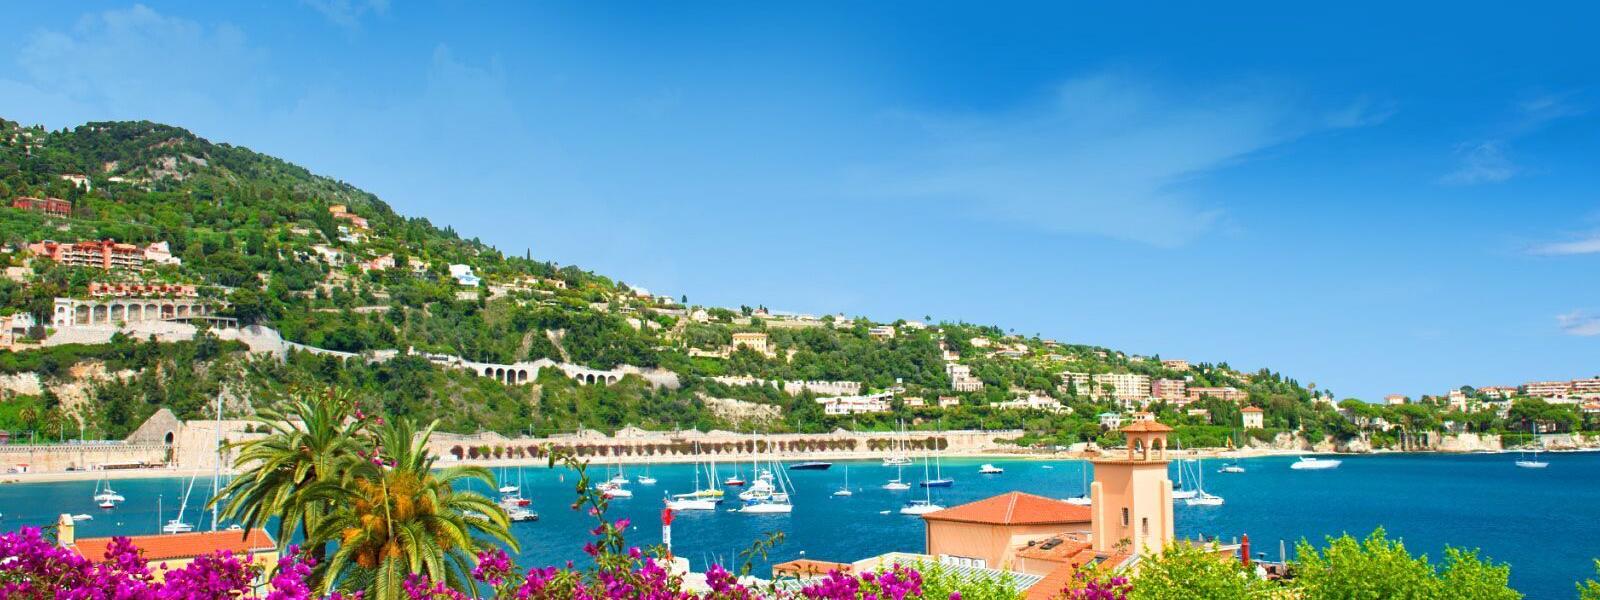 Ferienwohnungen und Ferienhäuser in Nizza - atraveo